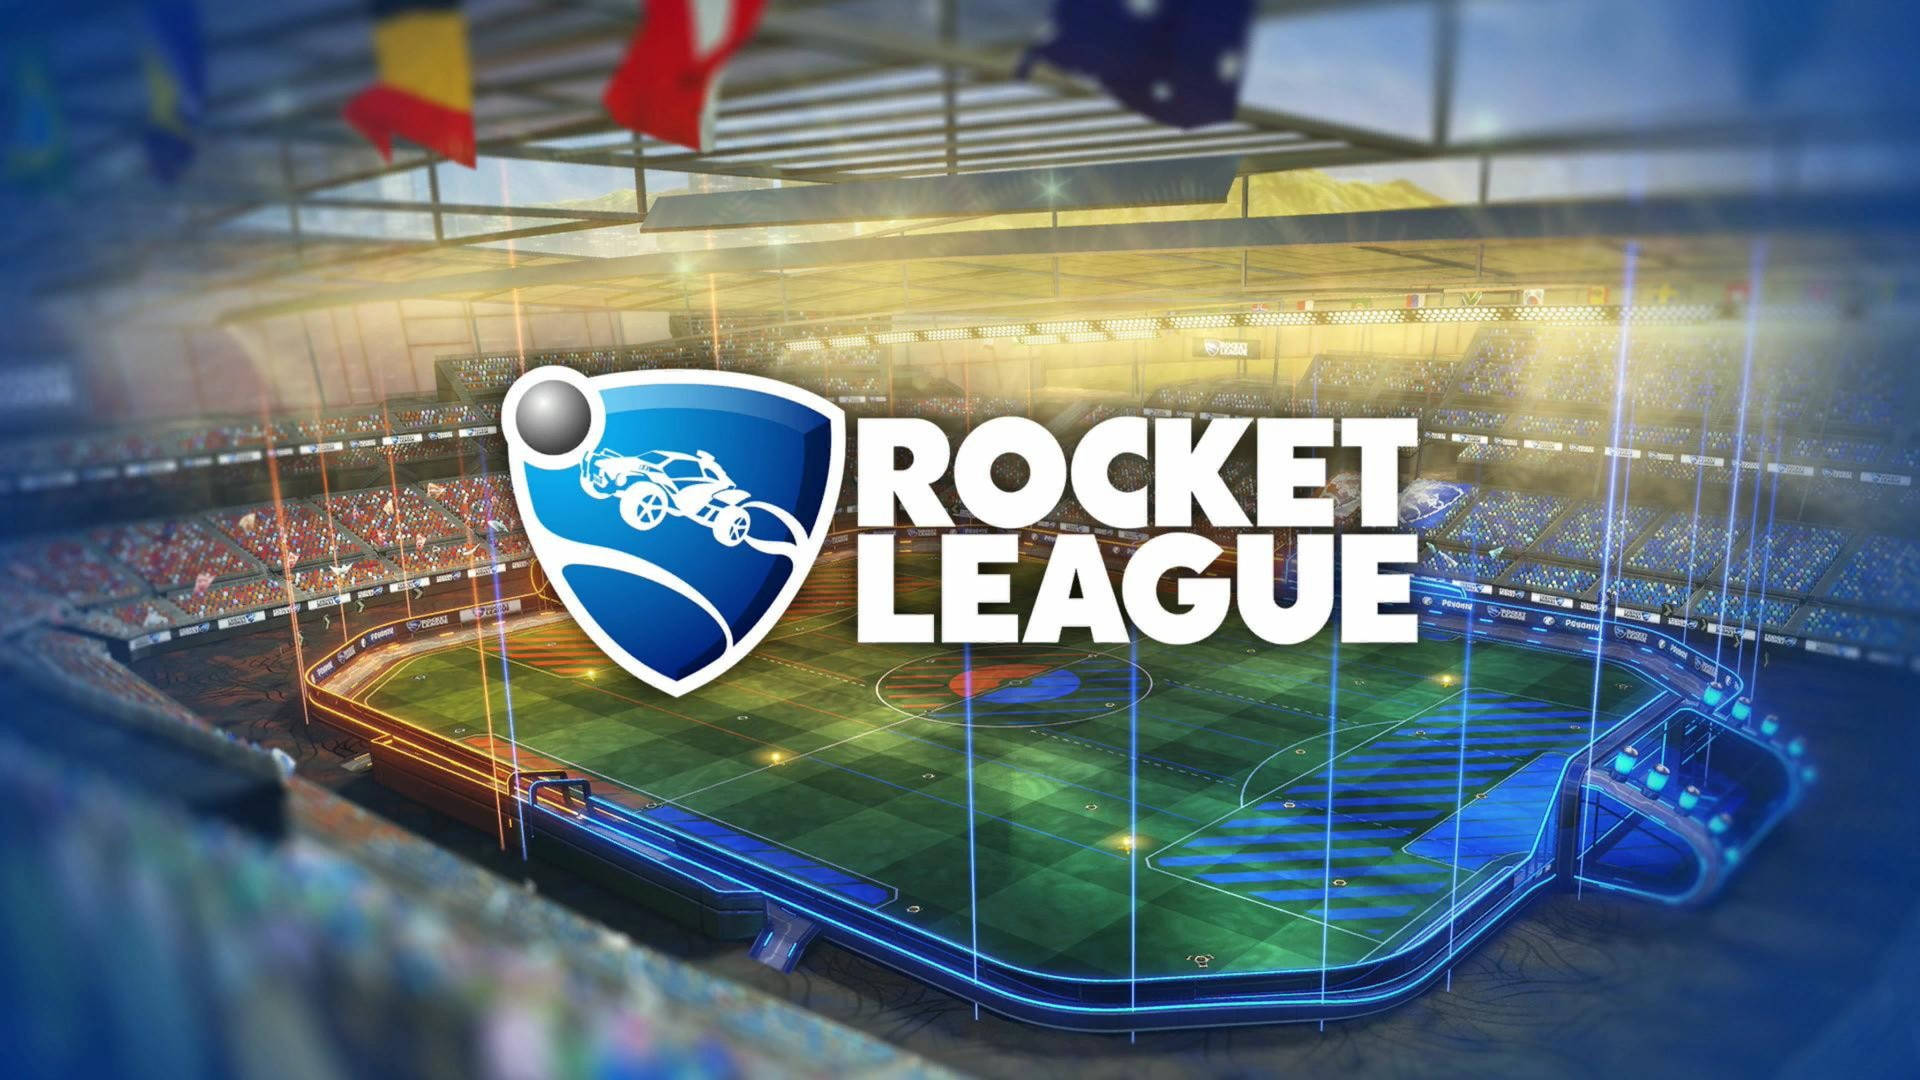 Rocket League Hd Background Wallpaper